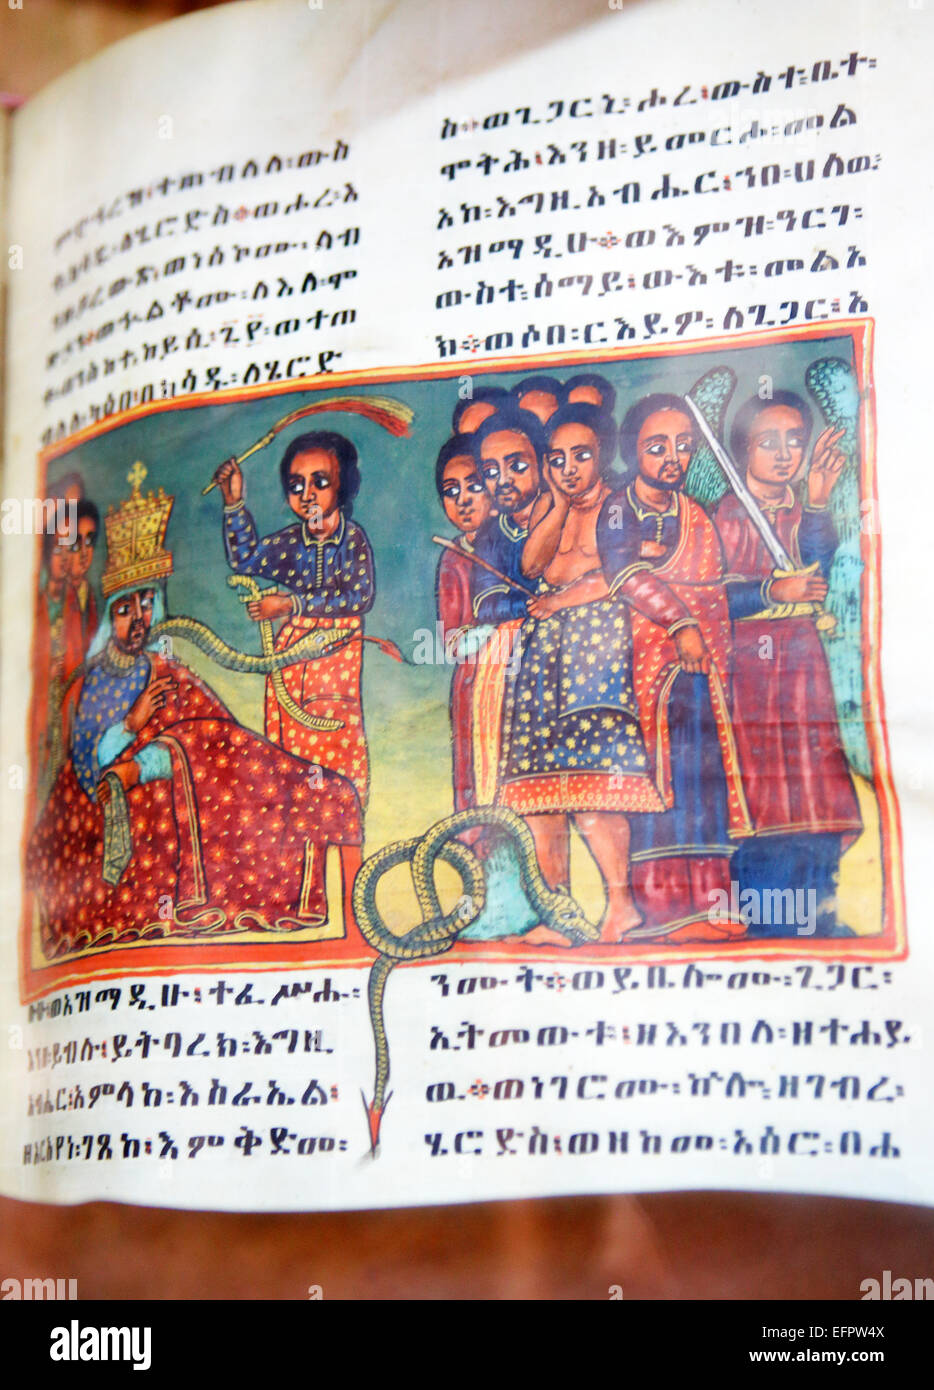 Qusquam abbey museum, old manuscript, Gonder, Amhara region, Ethiopia Stock Photo